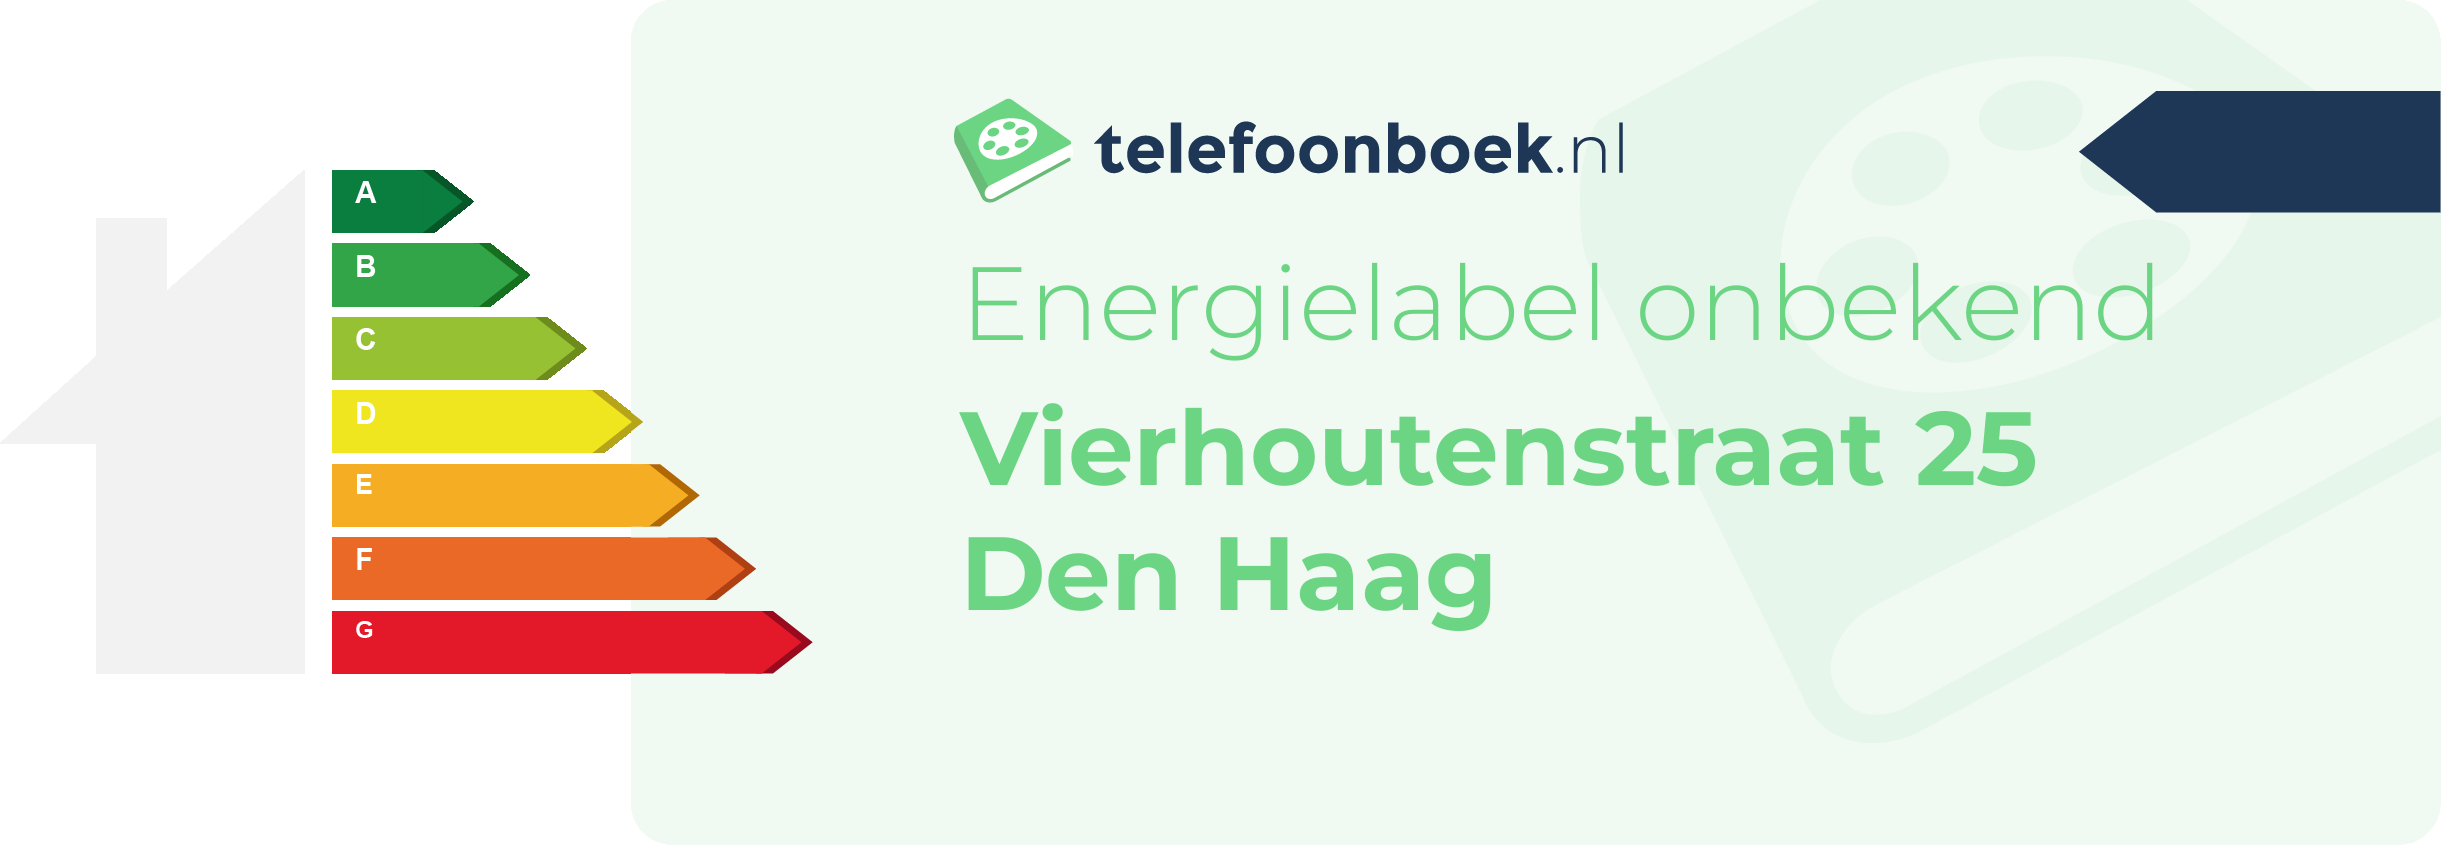 Energielabel Vierhoutenstraat 25 Den Haag